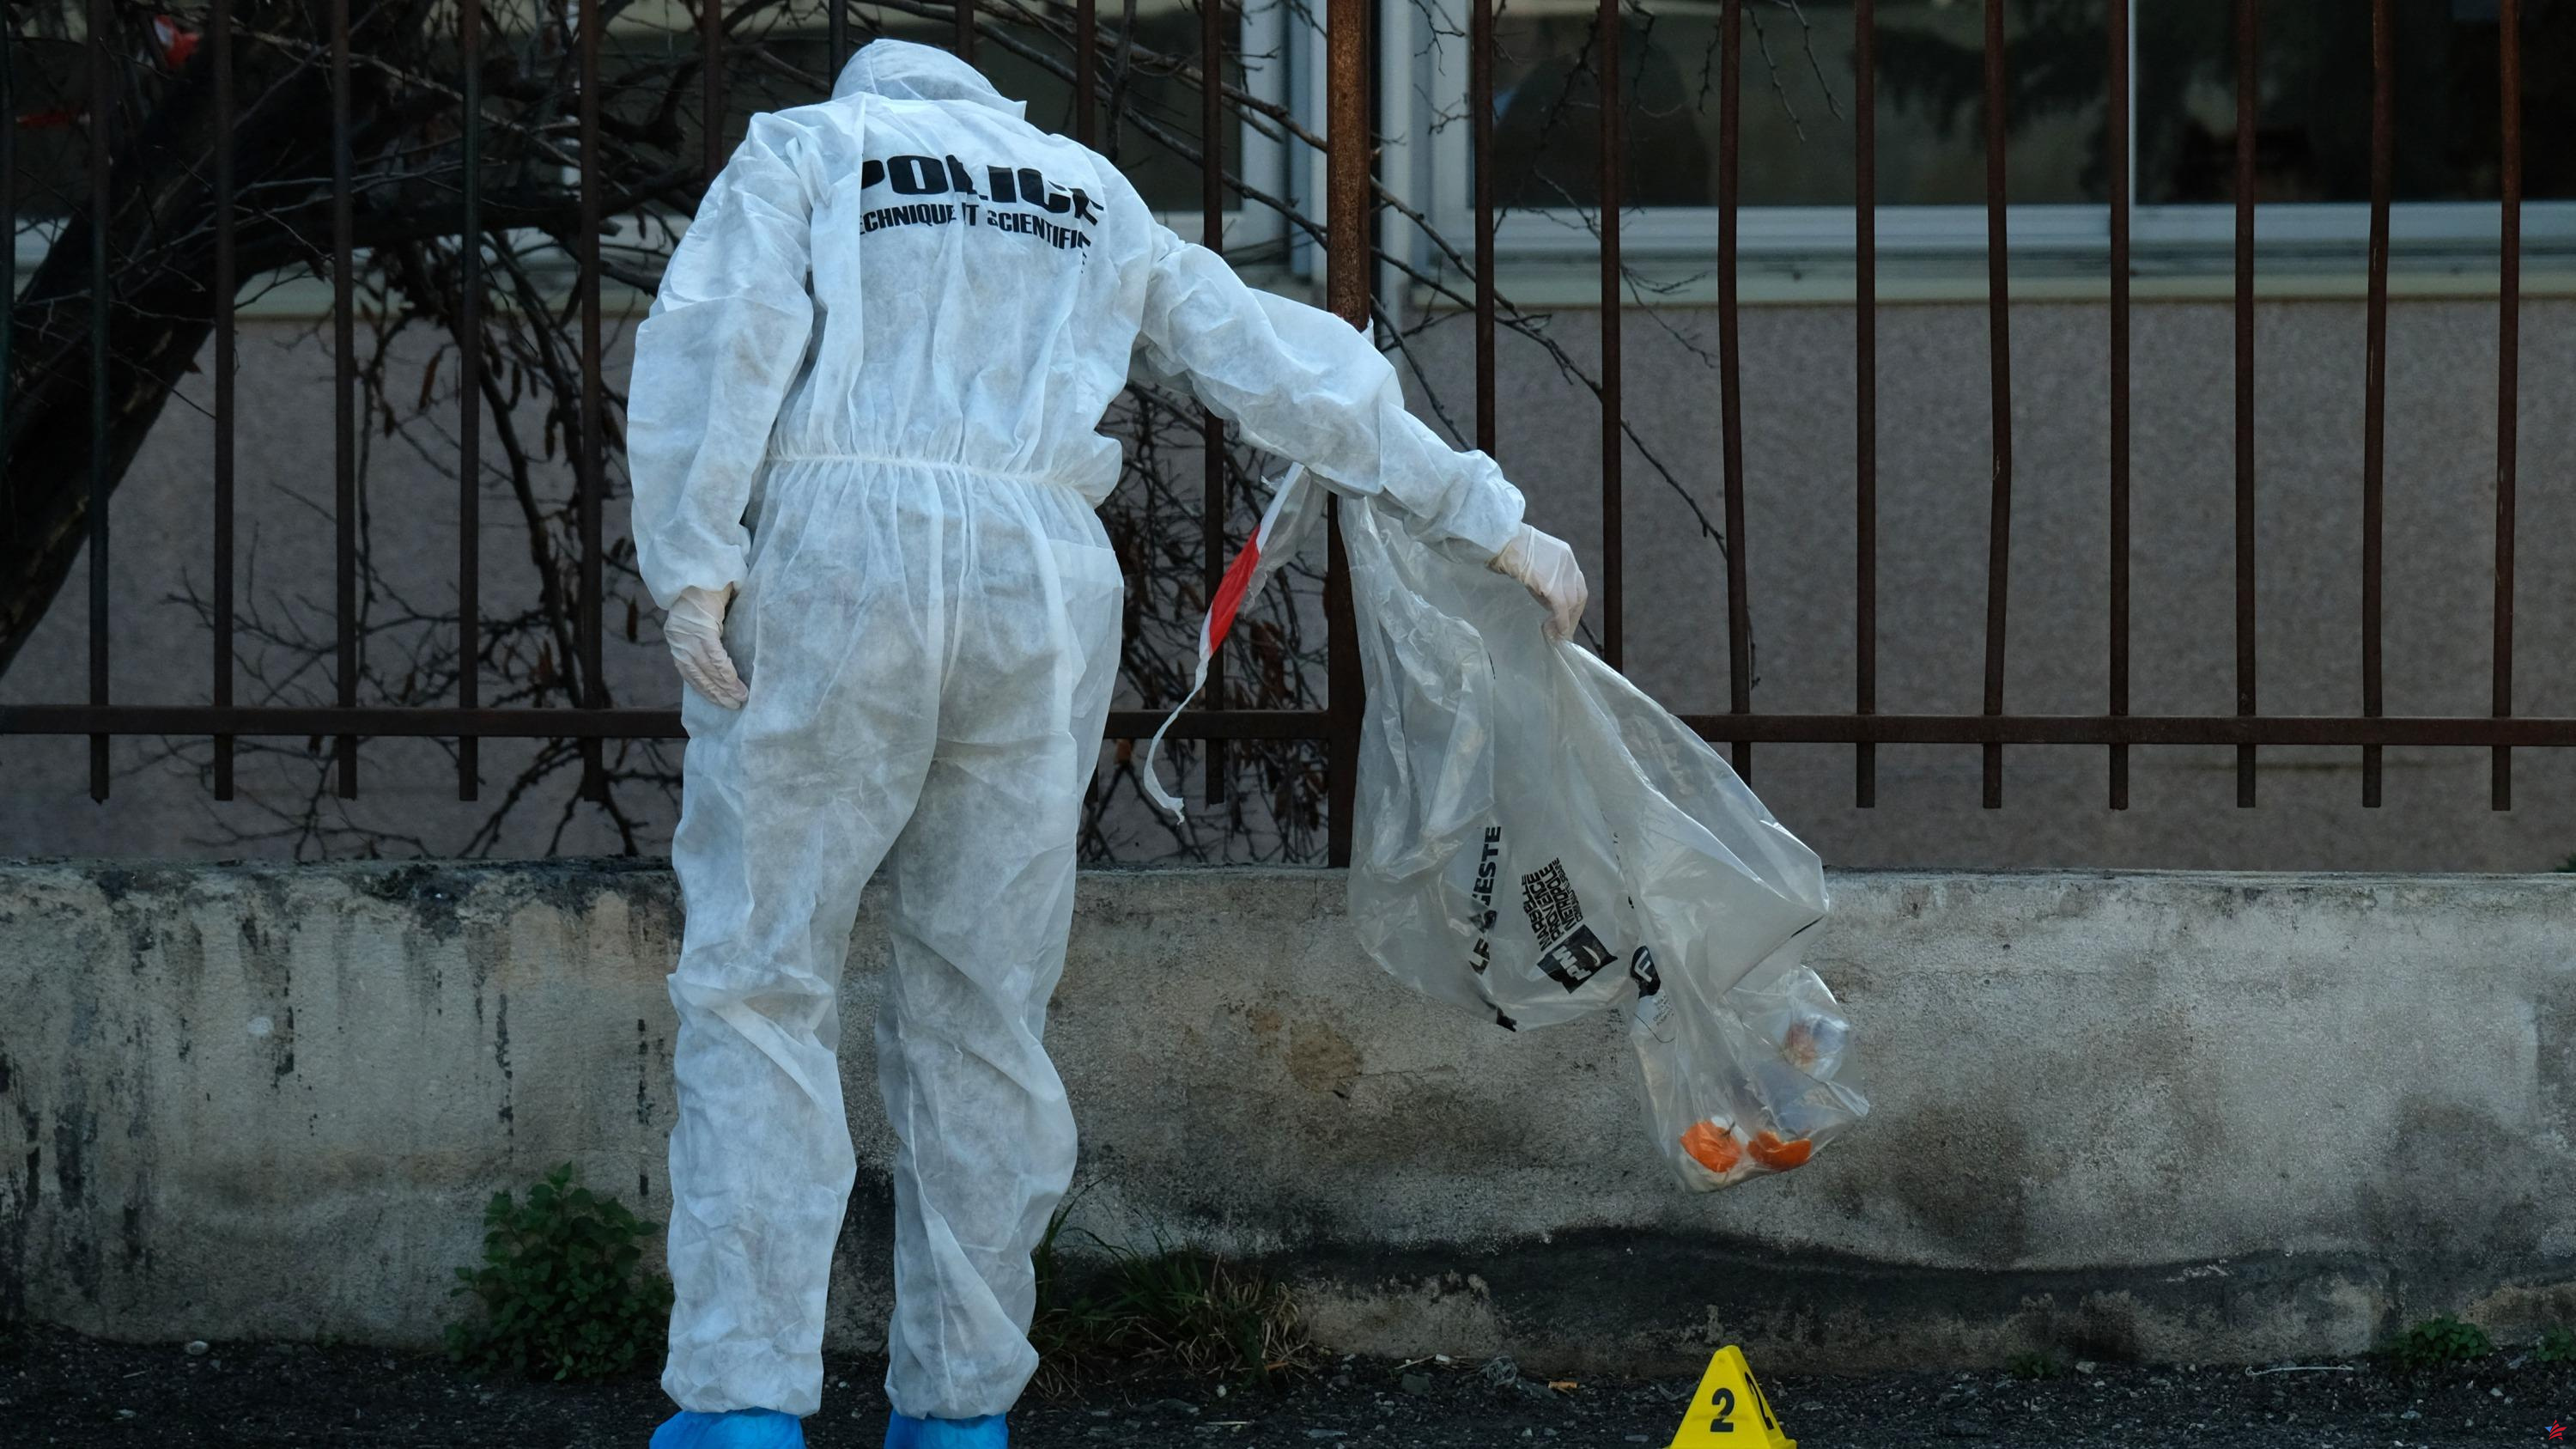 Molestos por el olor, los vecinos de Saint-Étienne descubrieron un cadáver envuelto en dos colchas atadas con una cuerda.